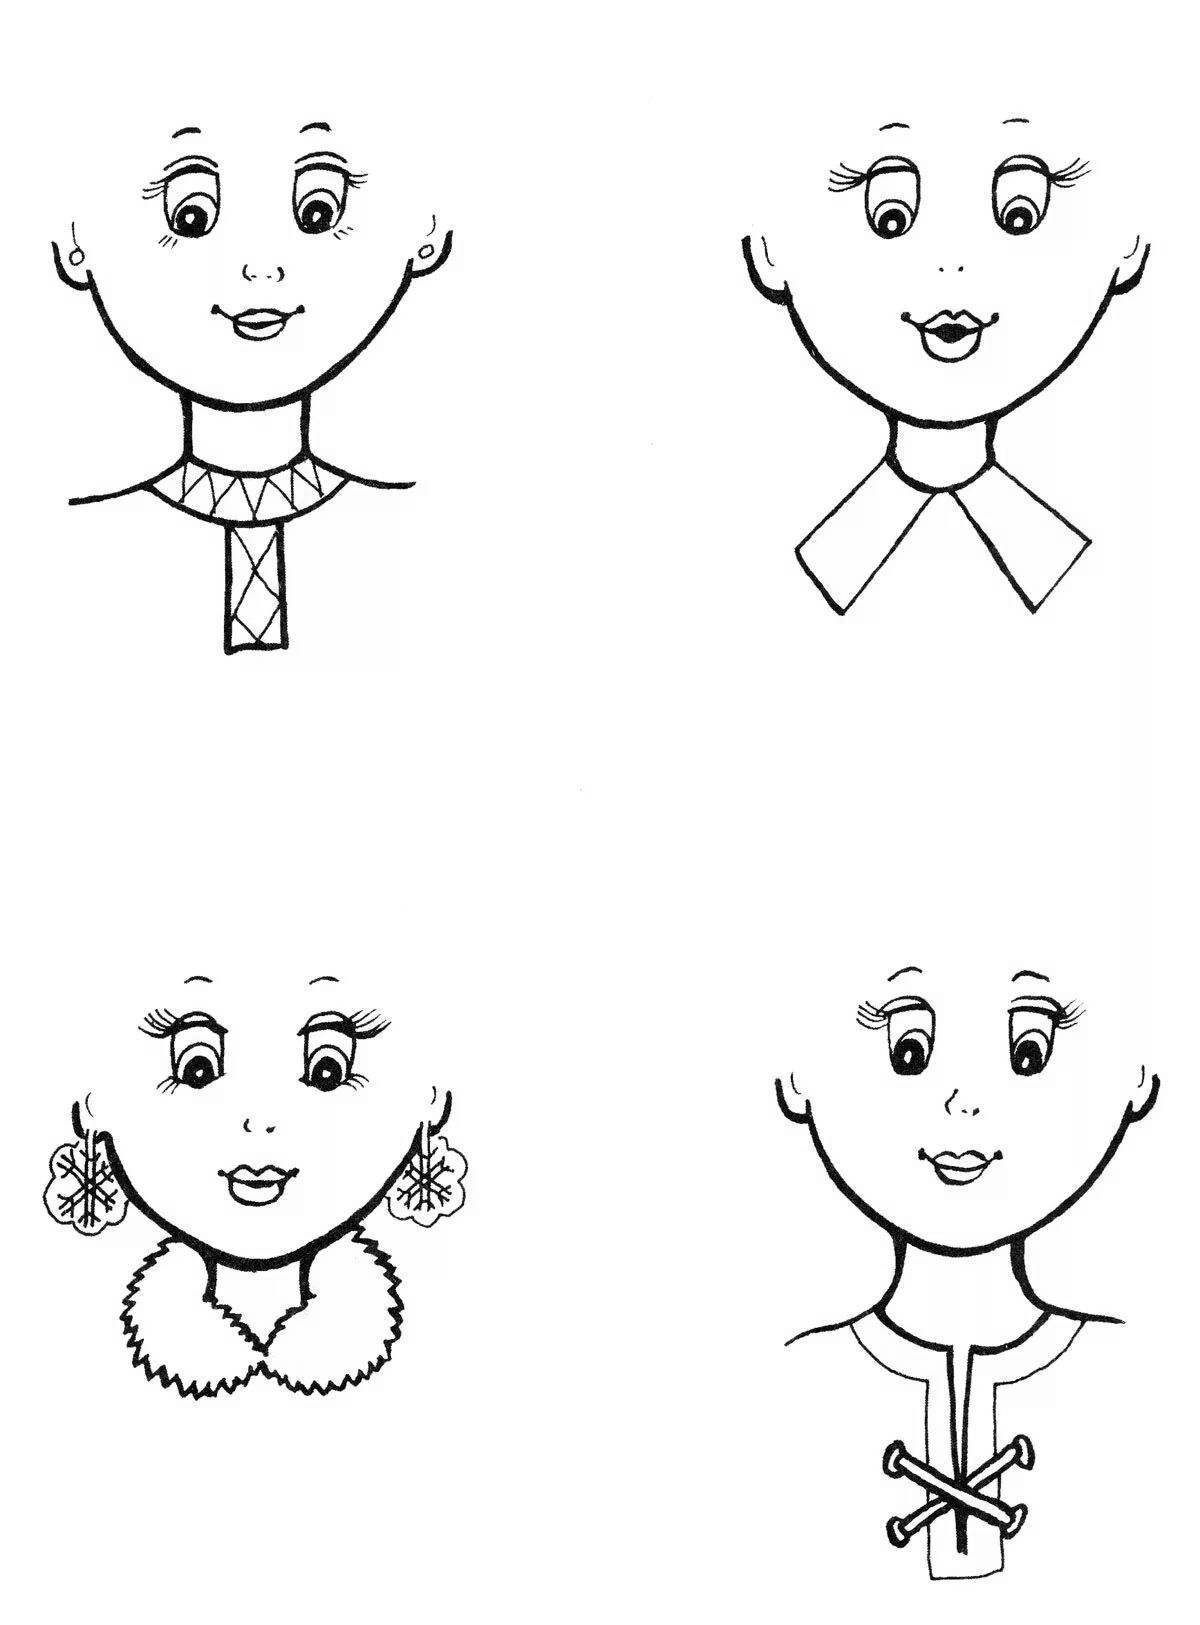 Рисование на лице для детей